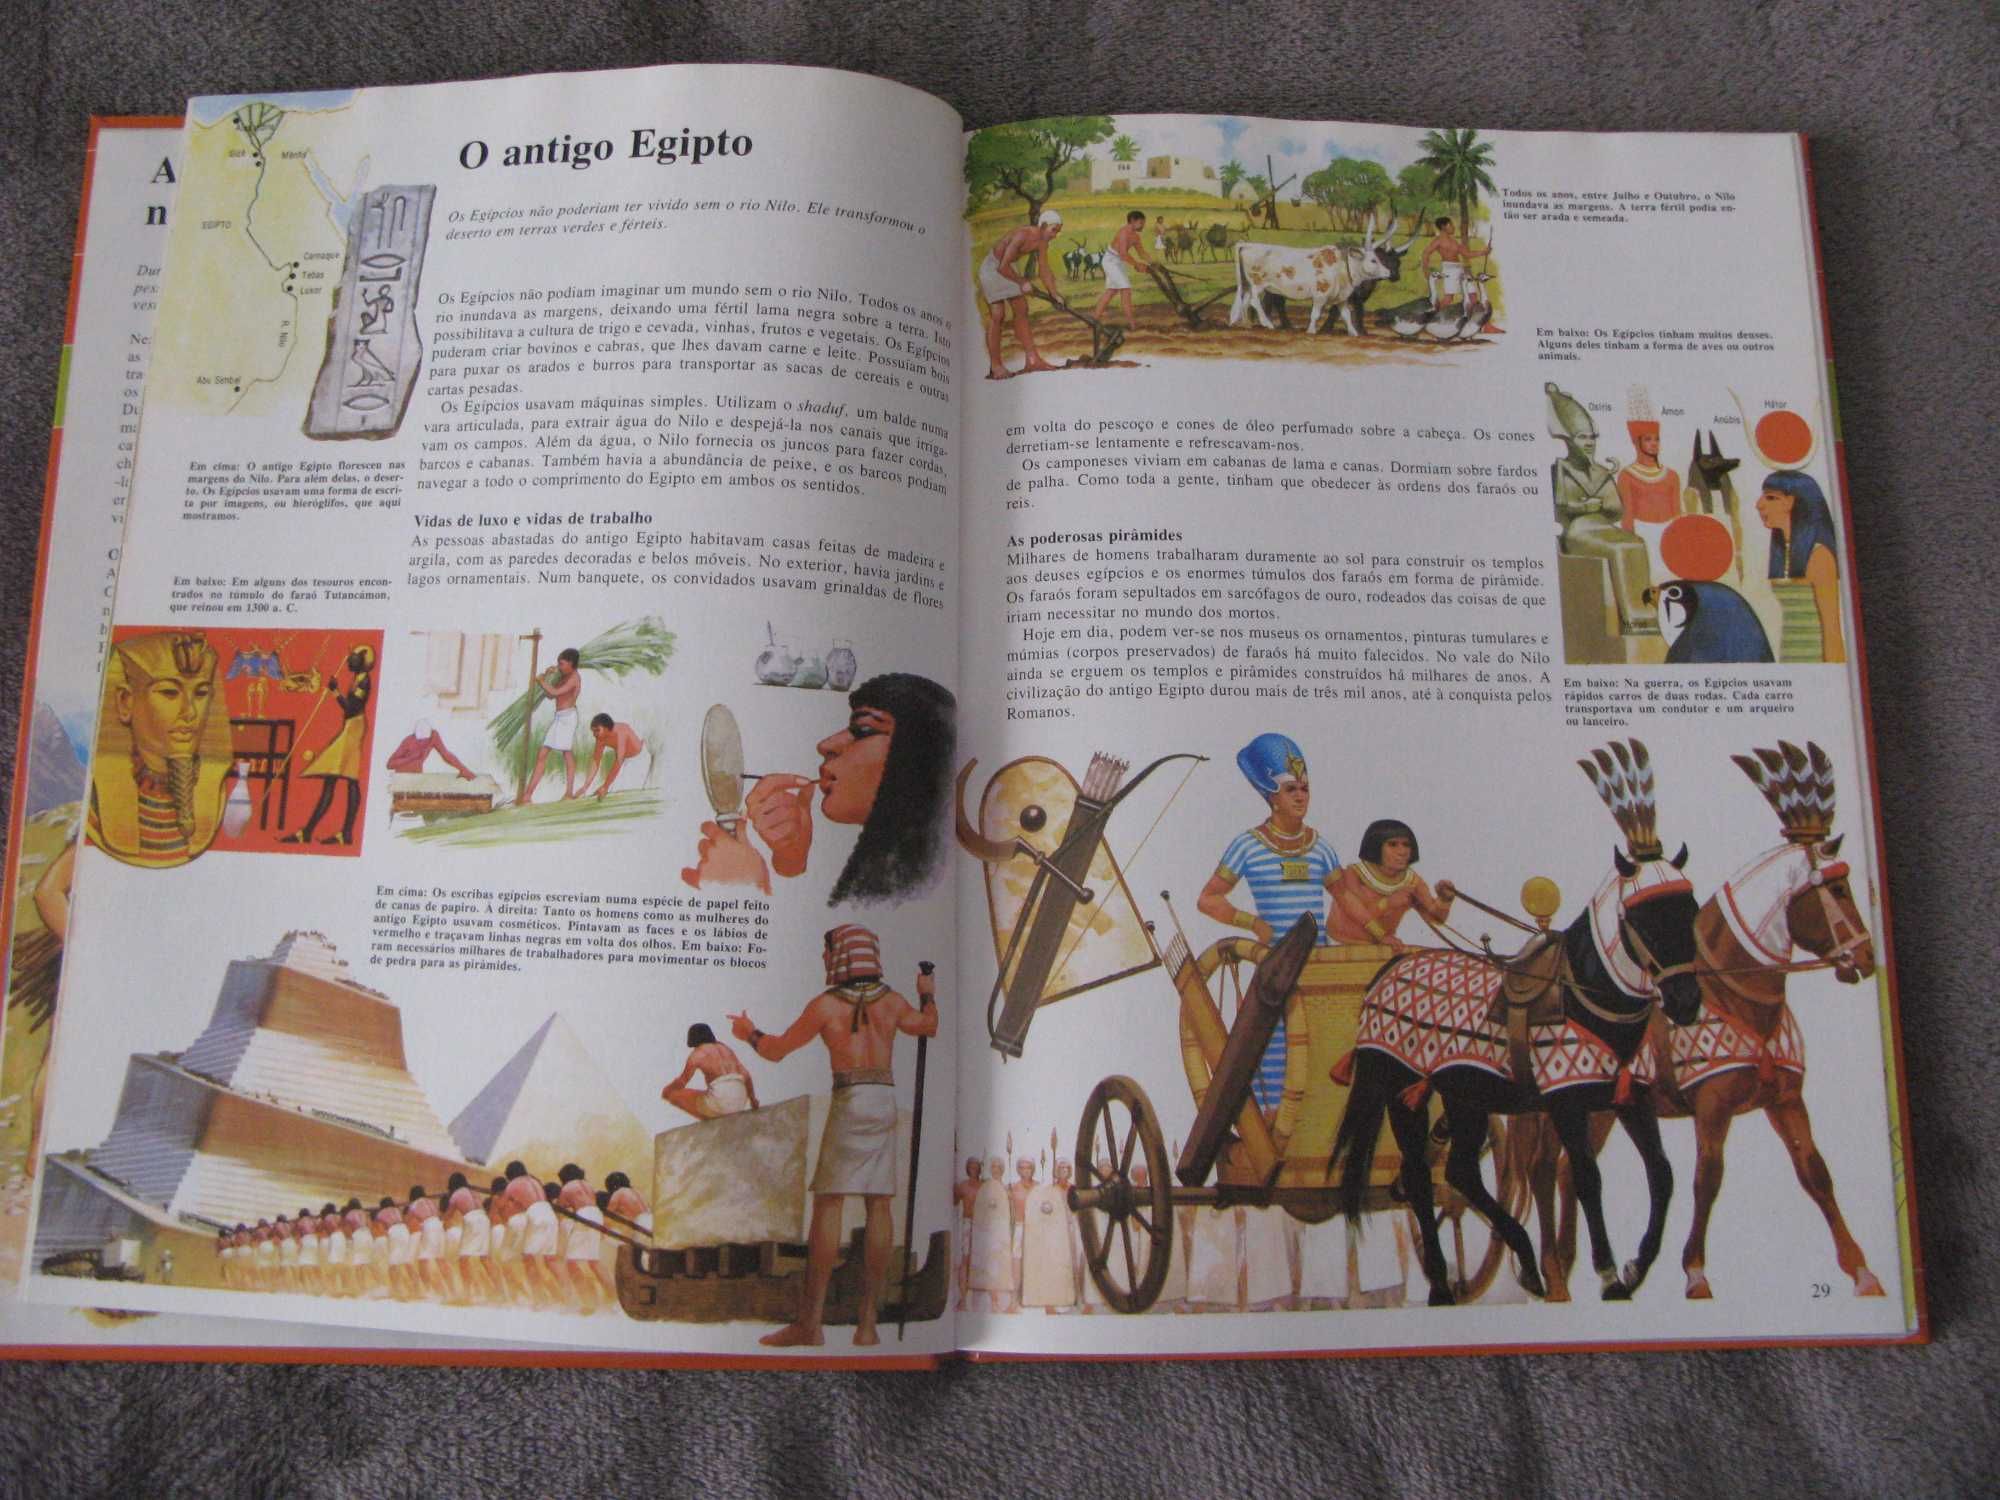 Livro “A História” - Enciclopédia Juvenil Ilustrada